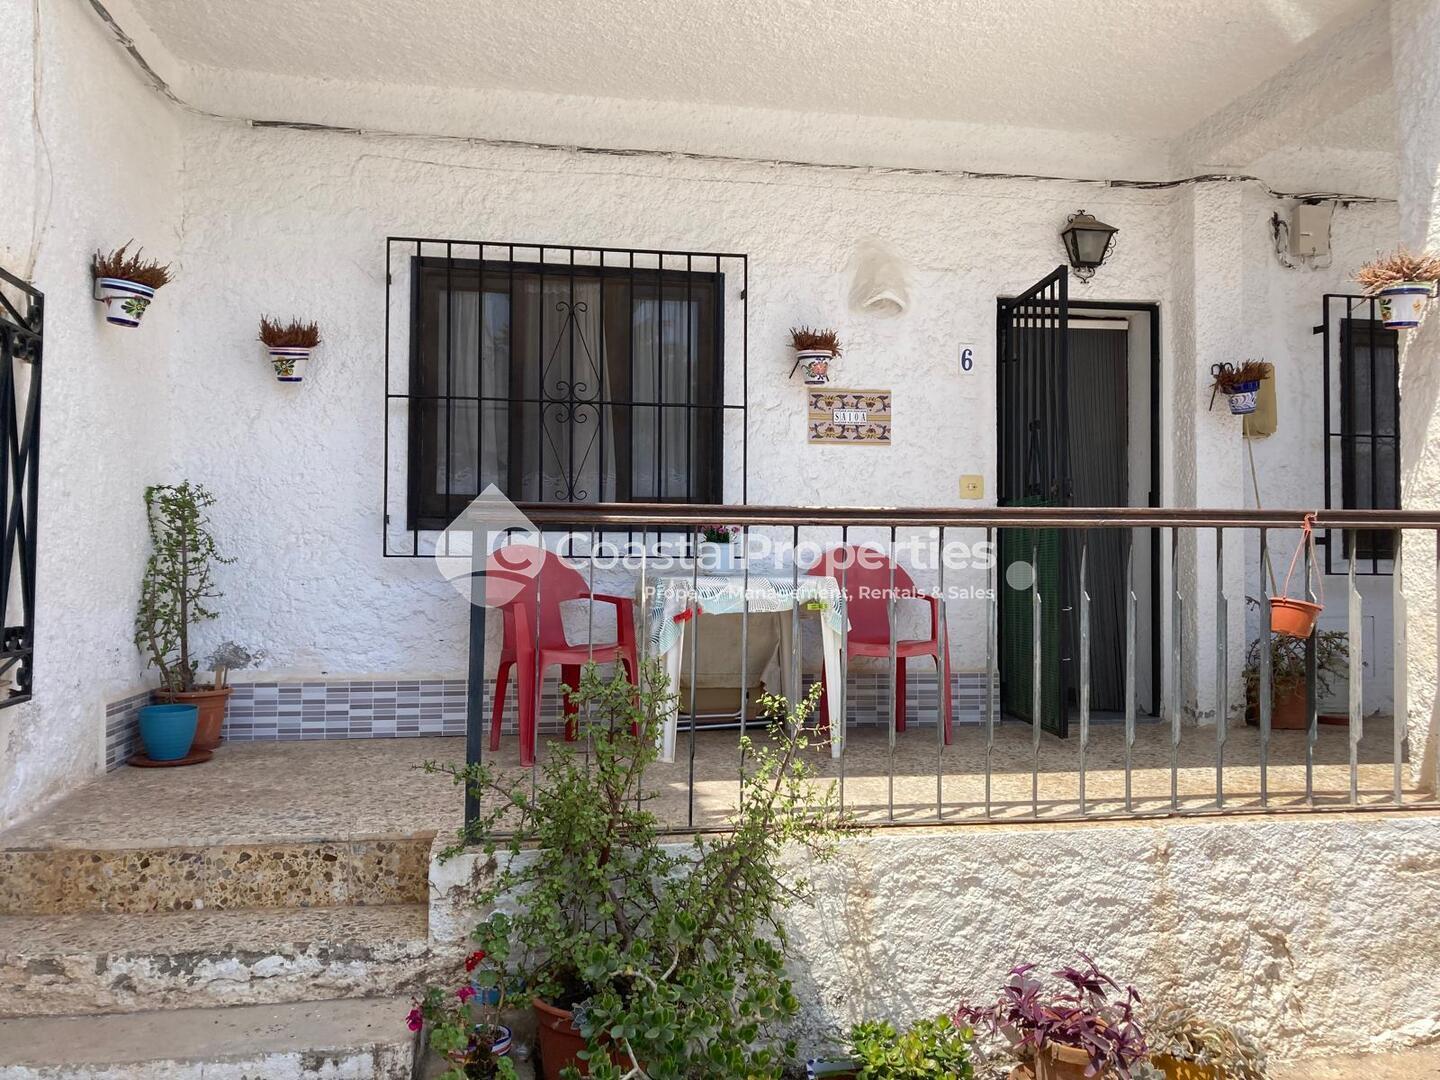 CPM 021- CASA SAIOA: Apartamento en Mojácar, Almería